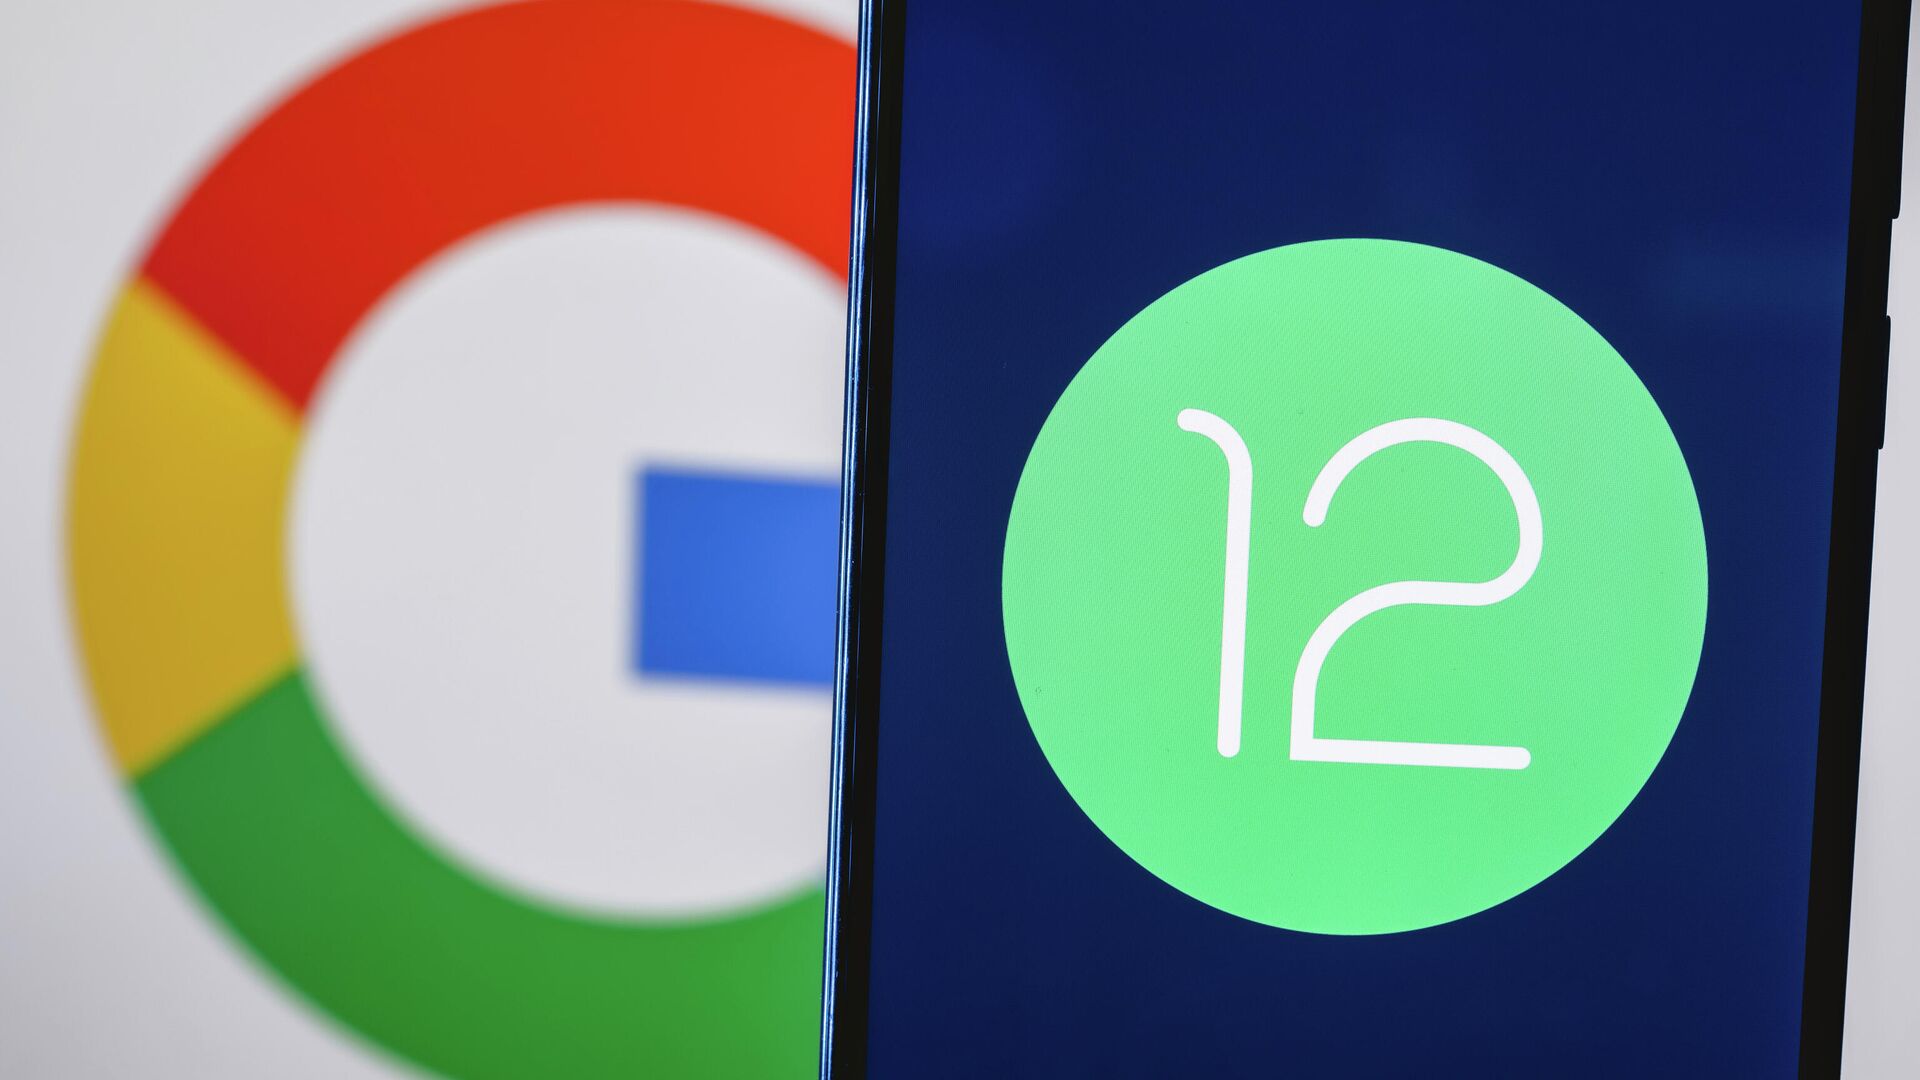 Все секреты Android 12: стоит ли обновлять смартфон на новую ОС Google